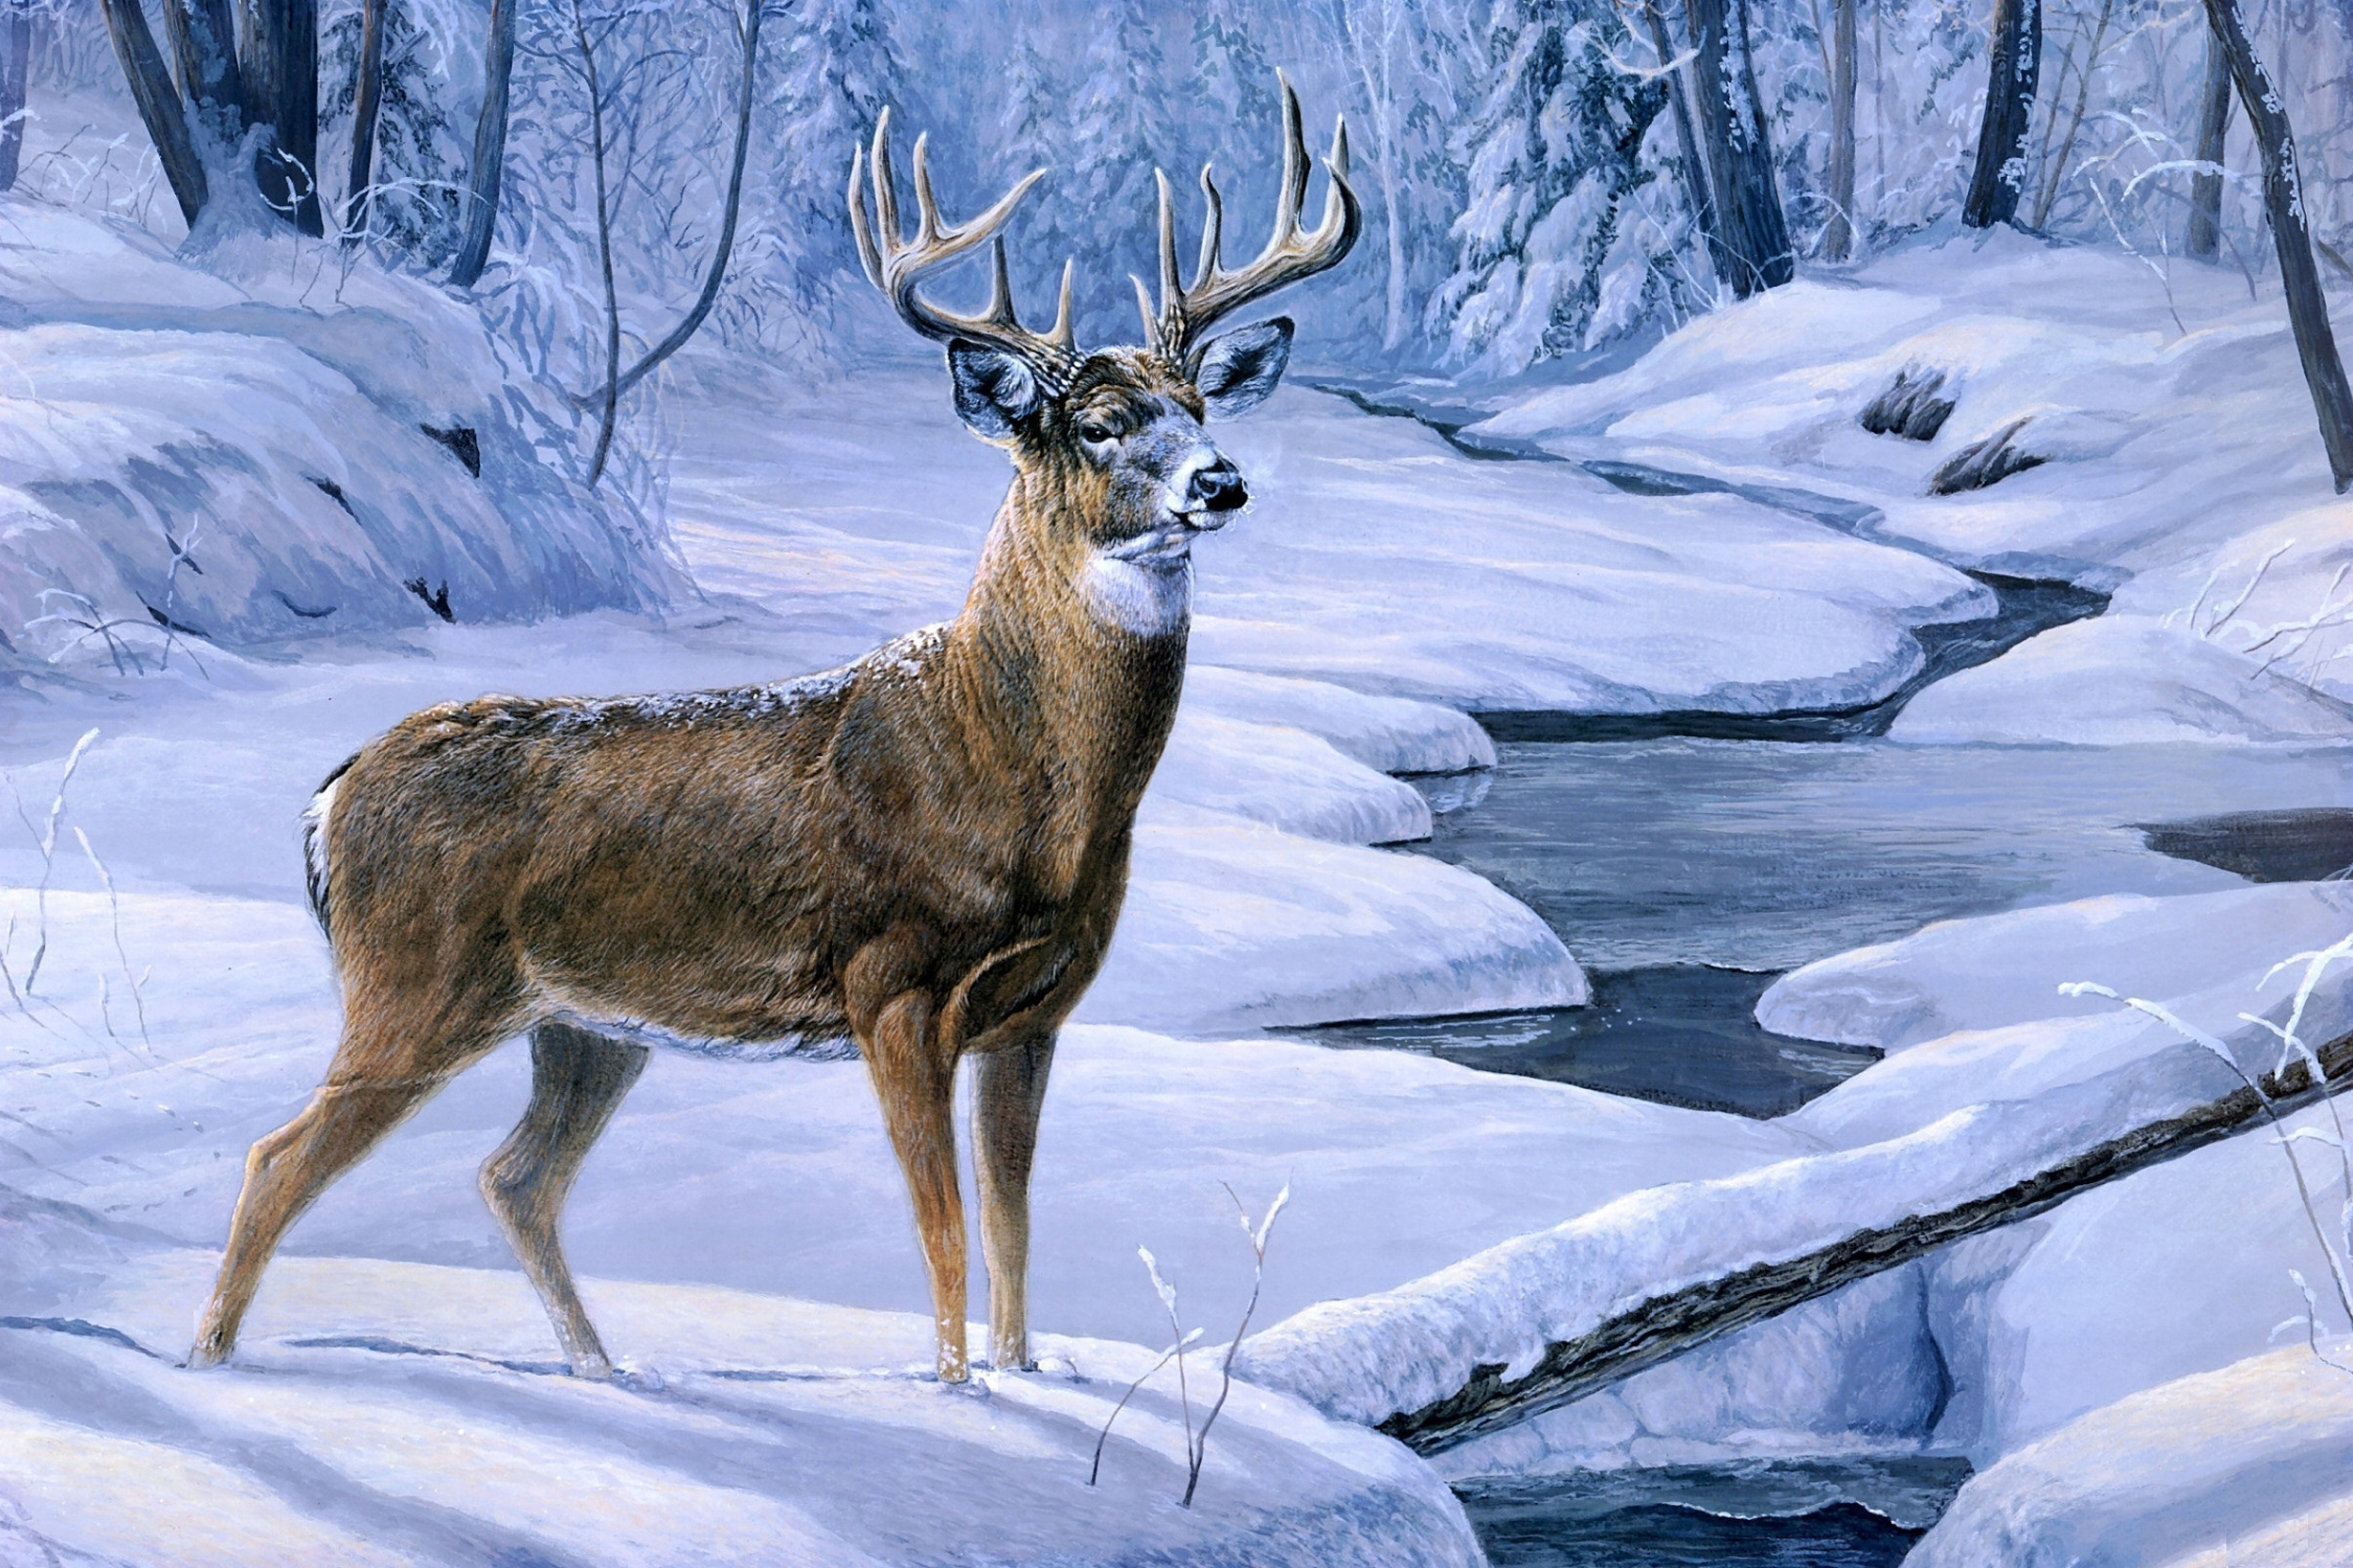 winter deer photography